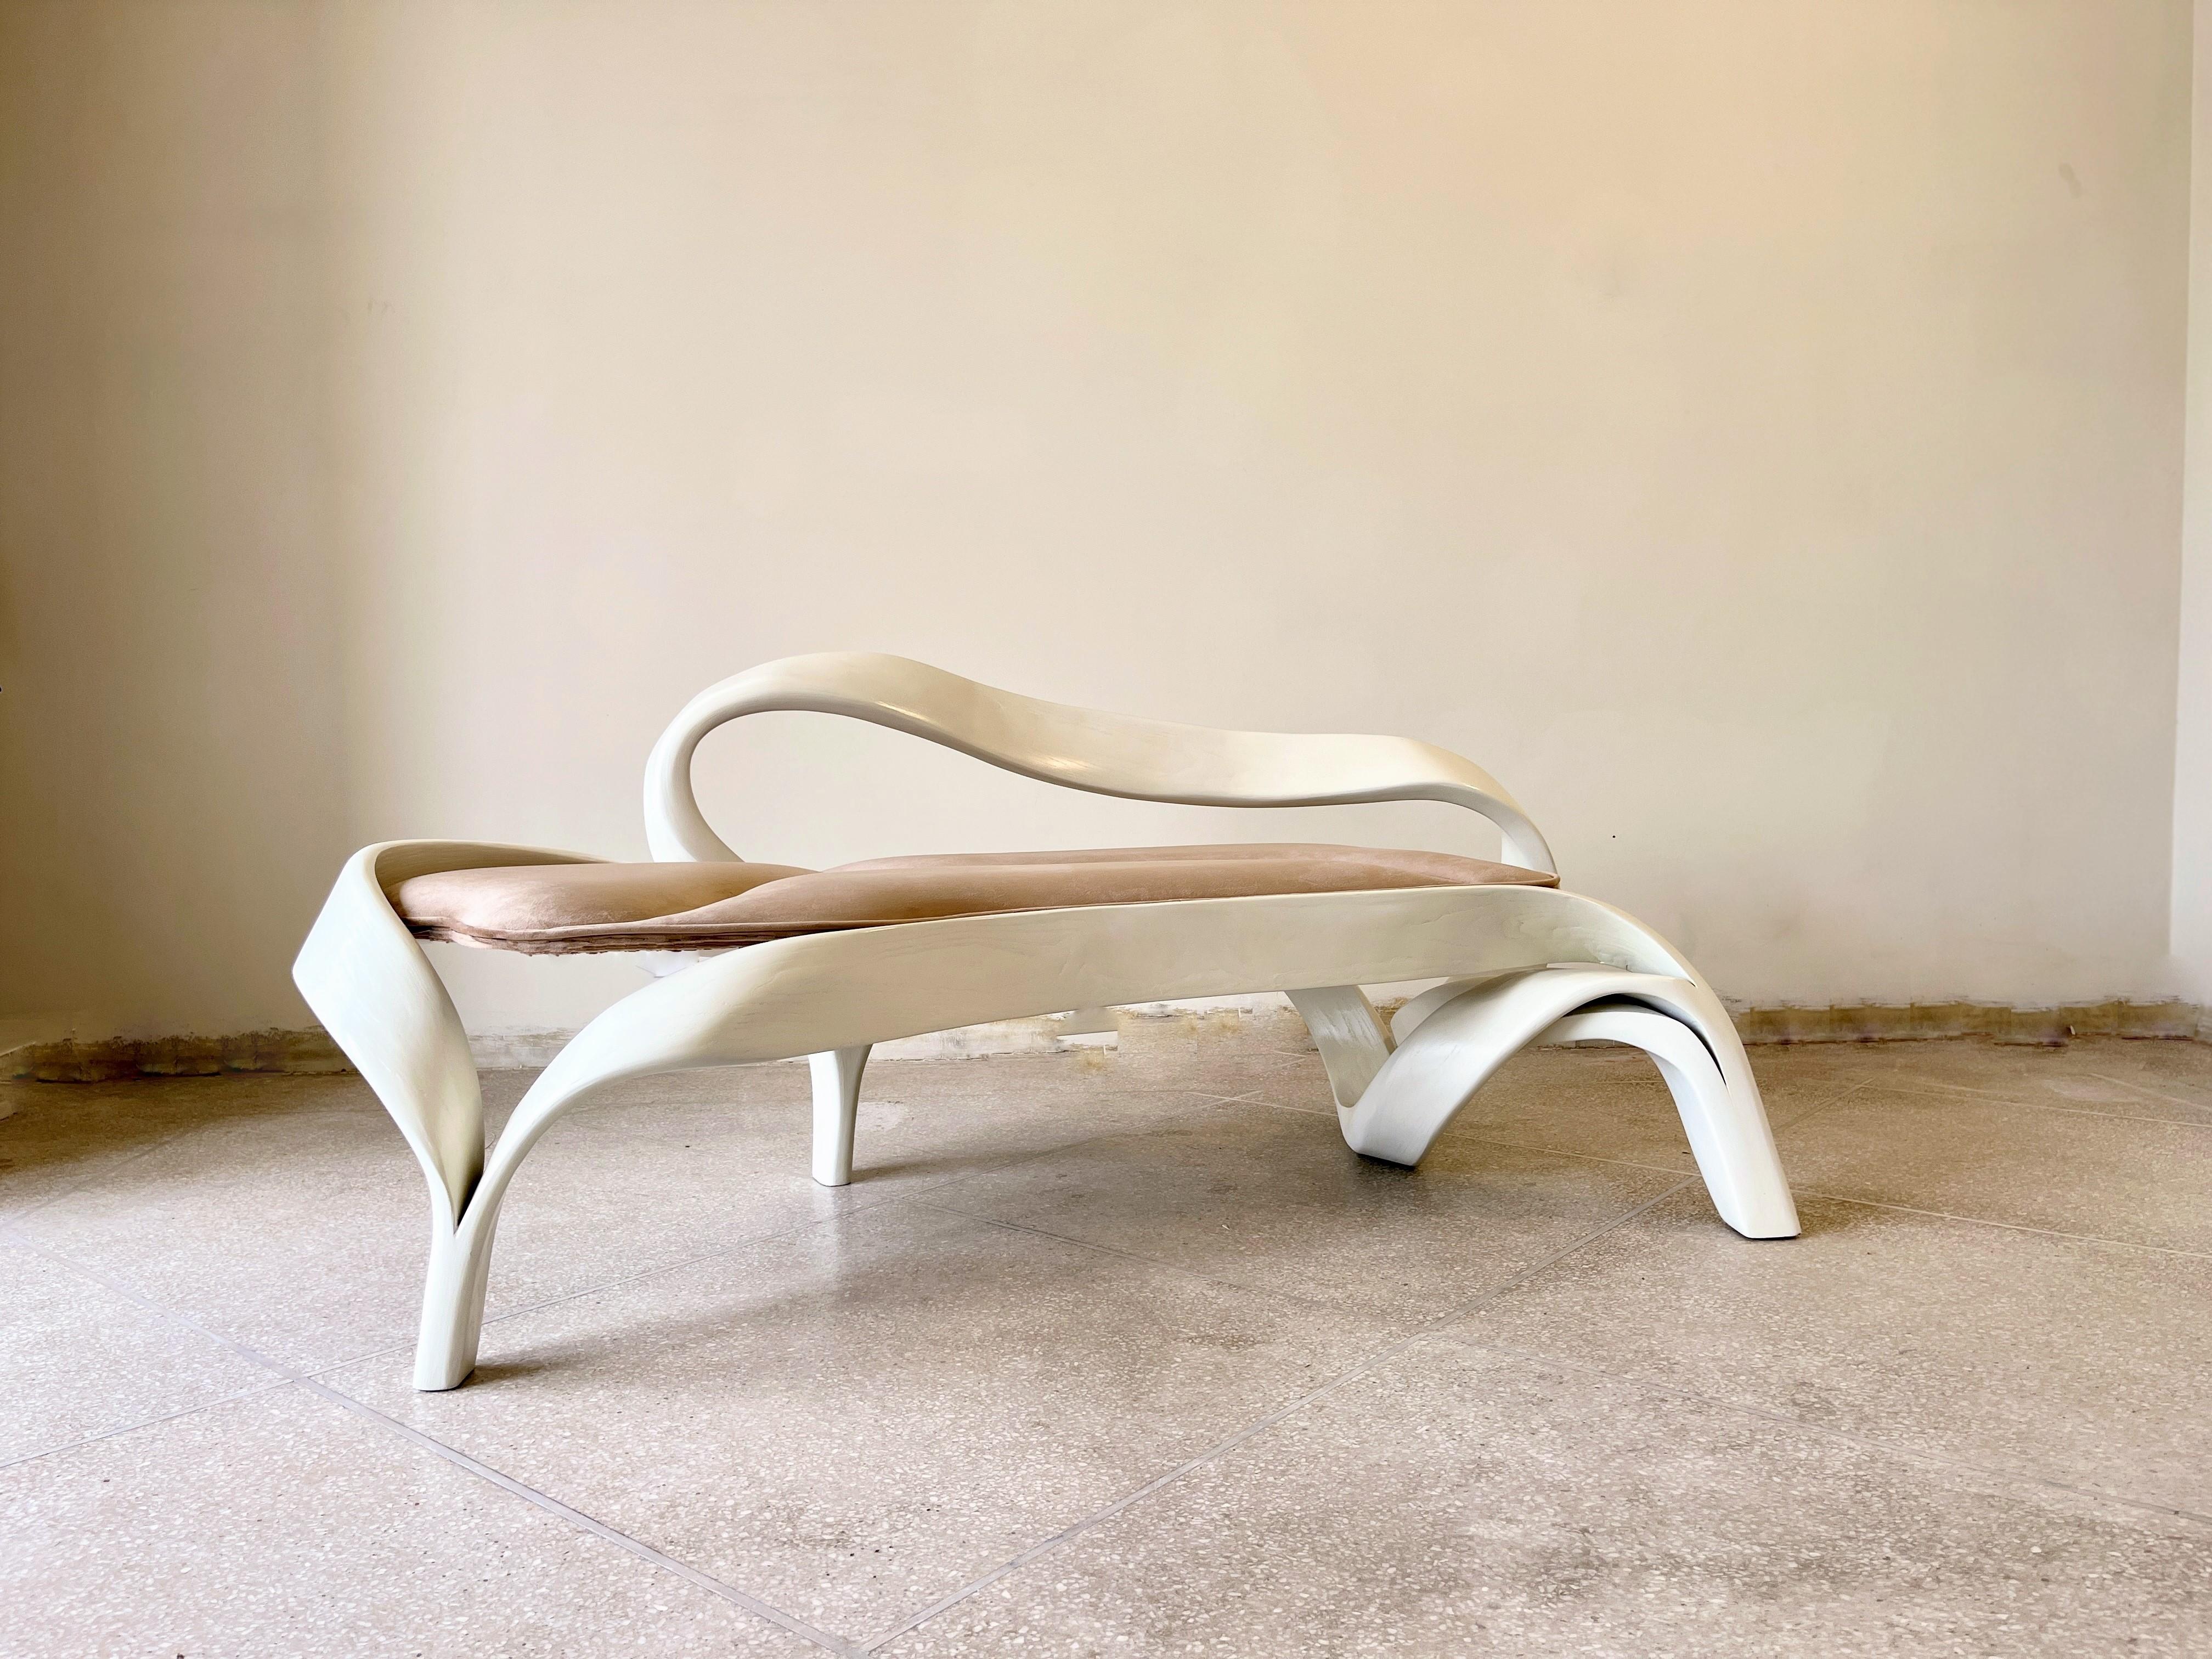 Le Two Seater No. 3, un châssis conçu par Raka Studio à l'aide d'une ancienne technique japonaise de cintrage du bois. Le design s'inspire des flux organiques de la Nature et des formes naturelles que l'on retrouve dans un paysage naturel. Chaque